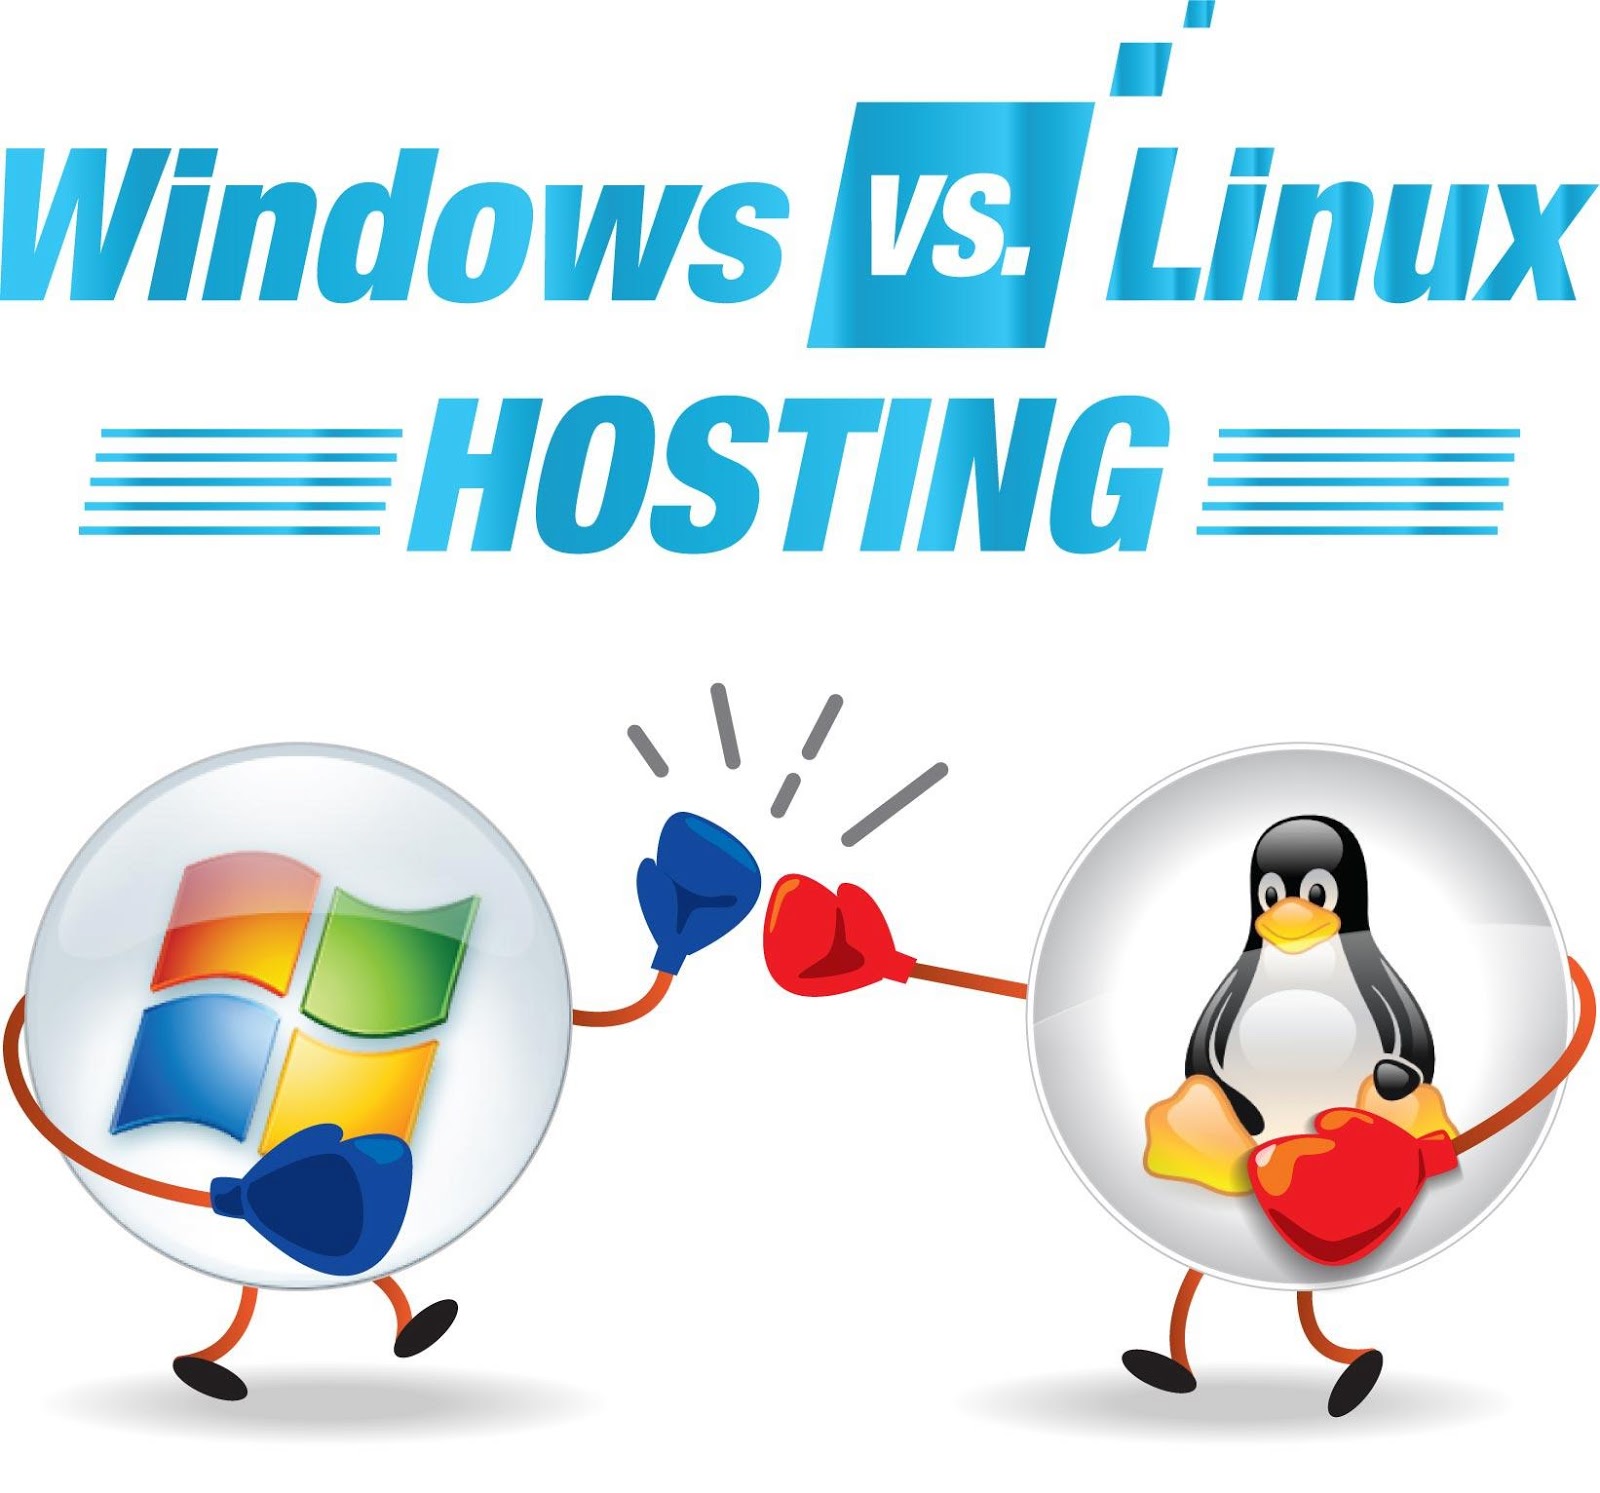 khac-biet-giua-Windows-hosting-va-Linux-hosting